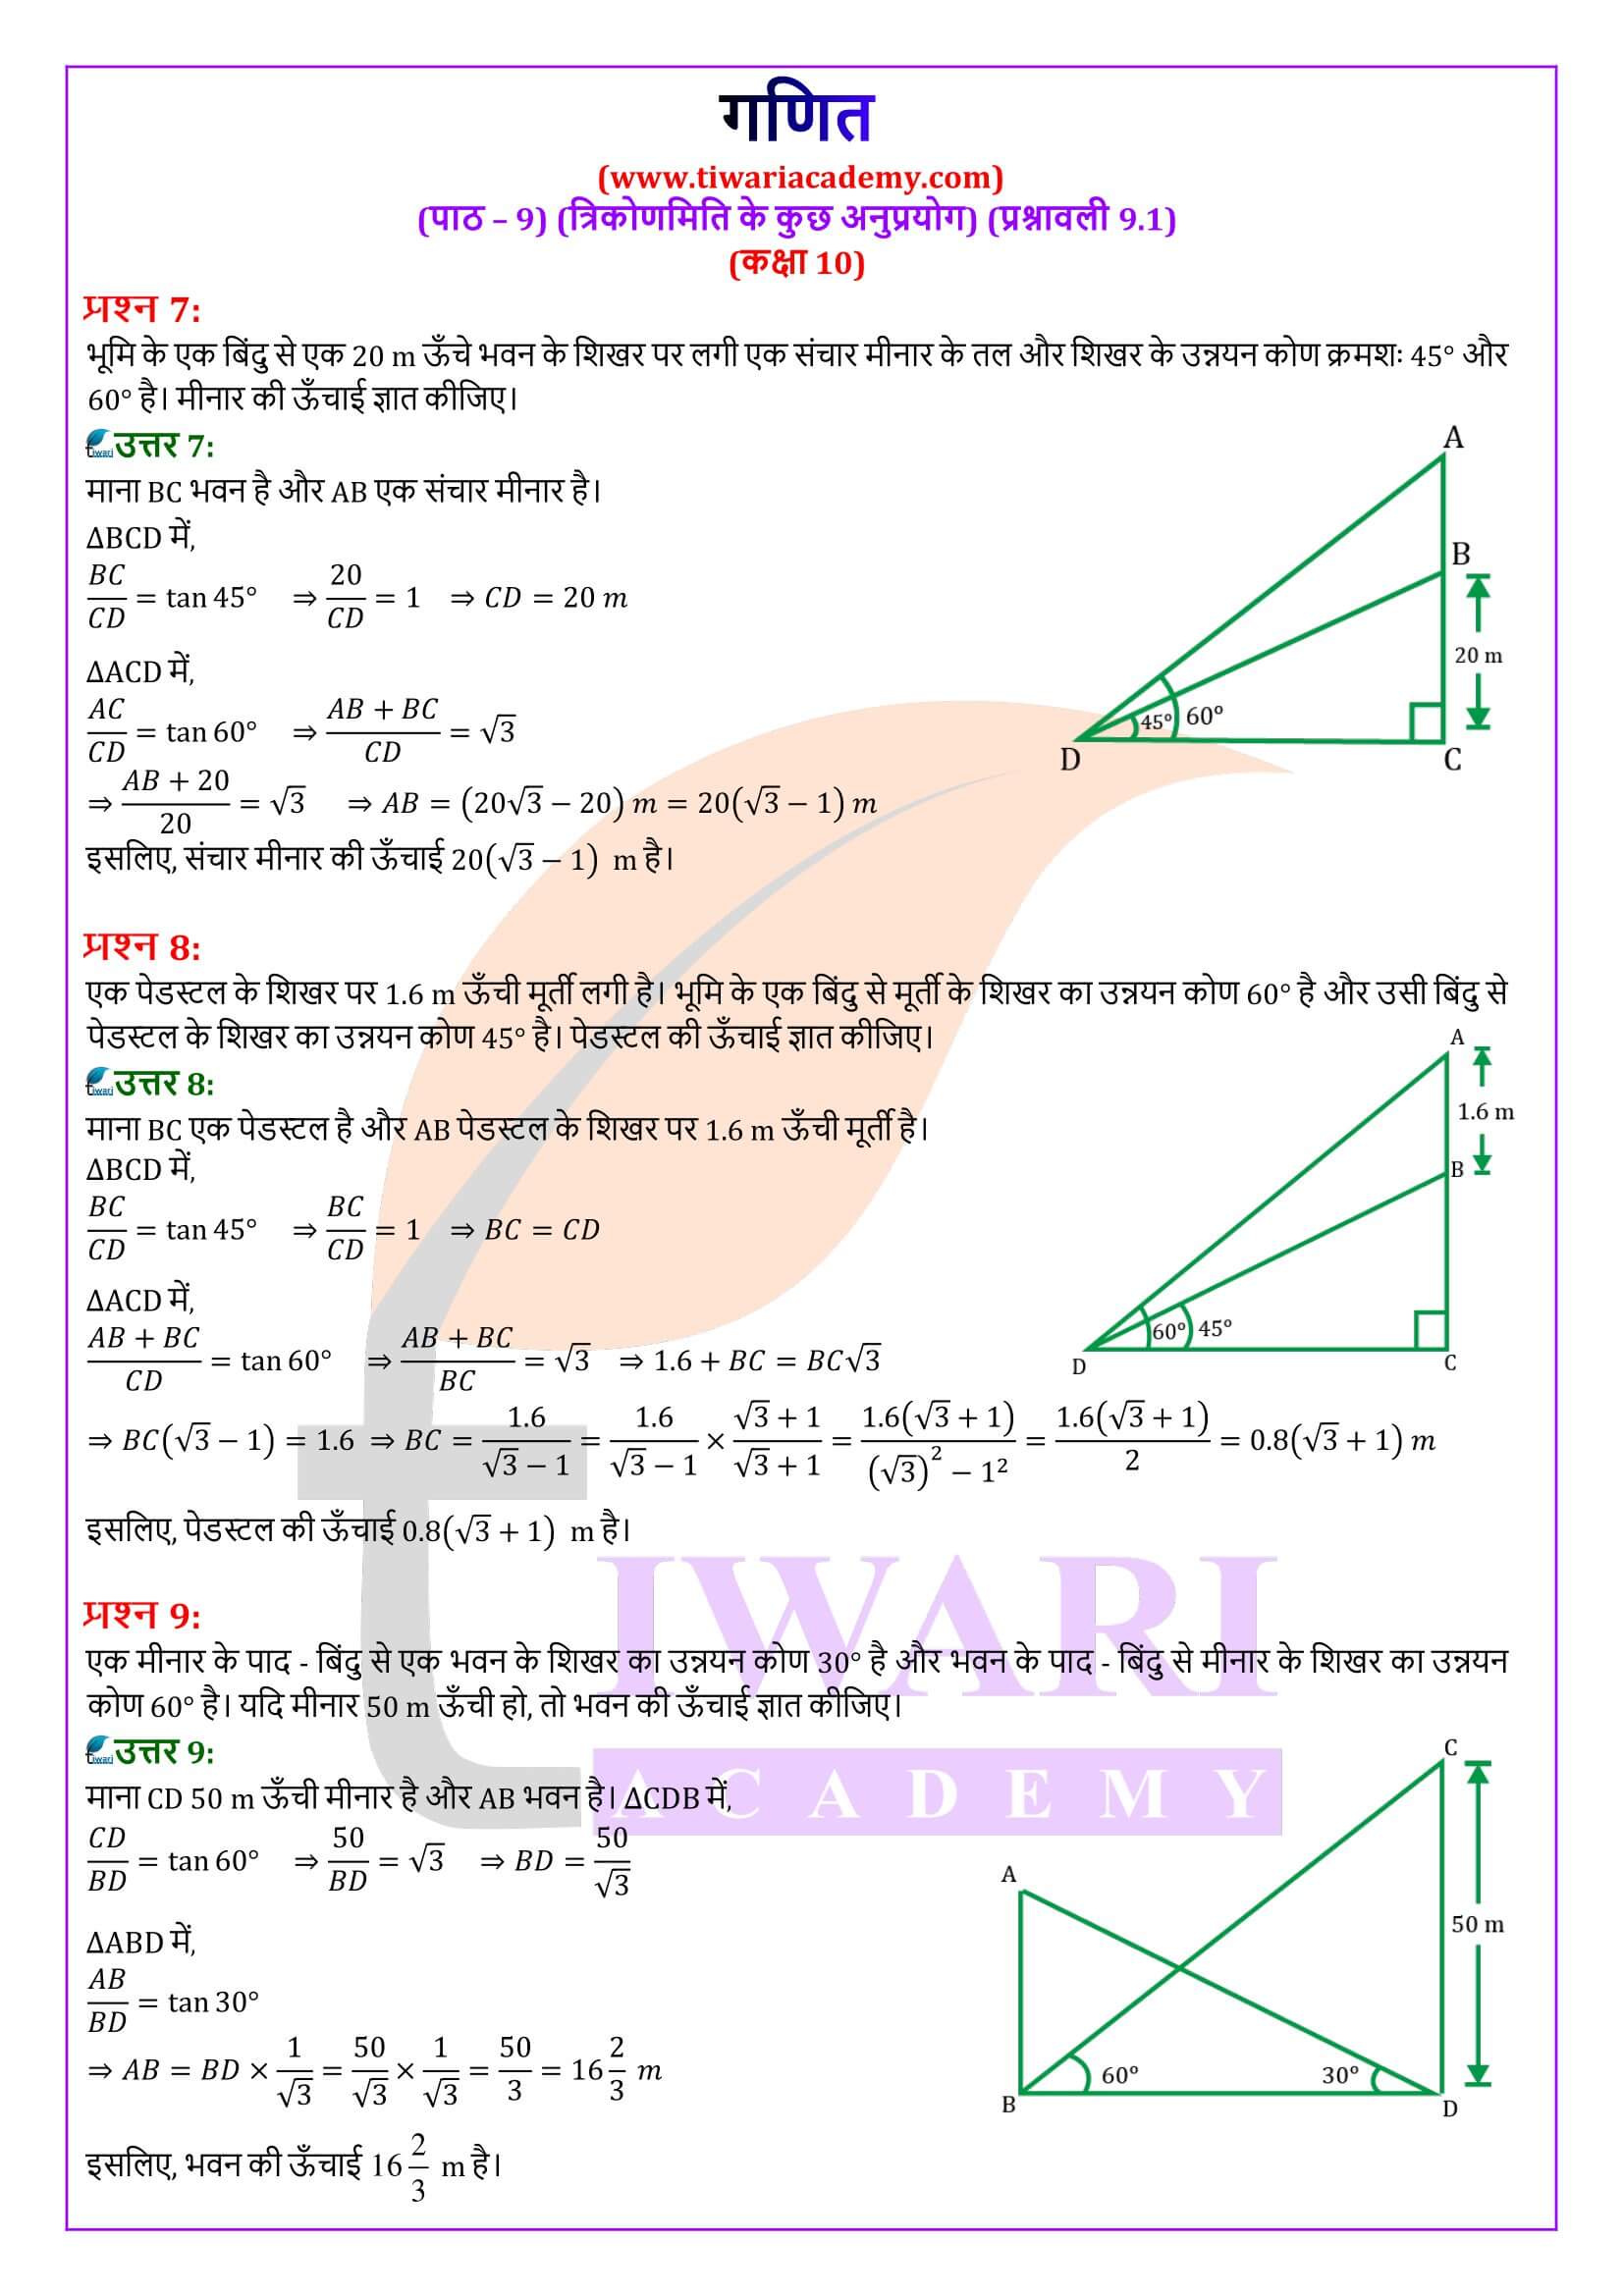 कक्षा 10 गणित प्रश्नावली 9.1 के लिए समाधान